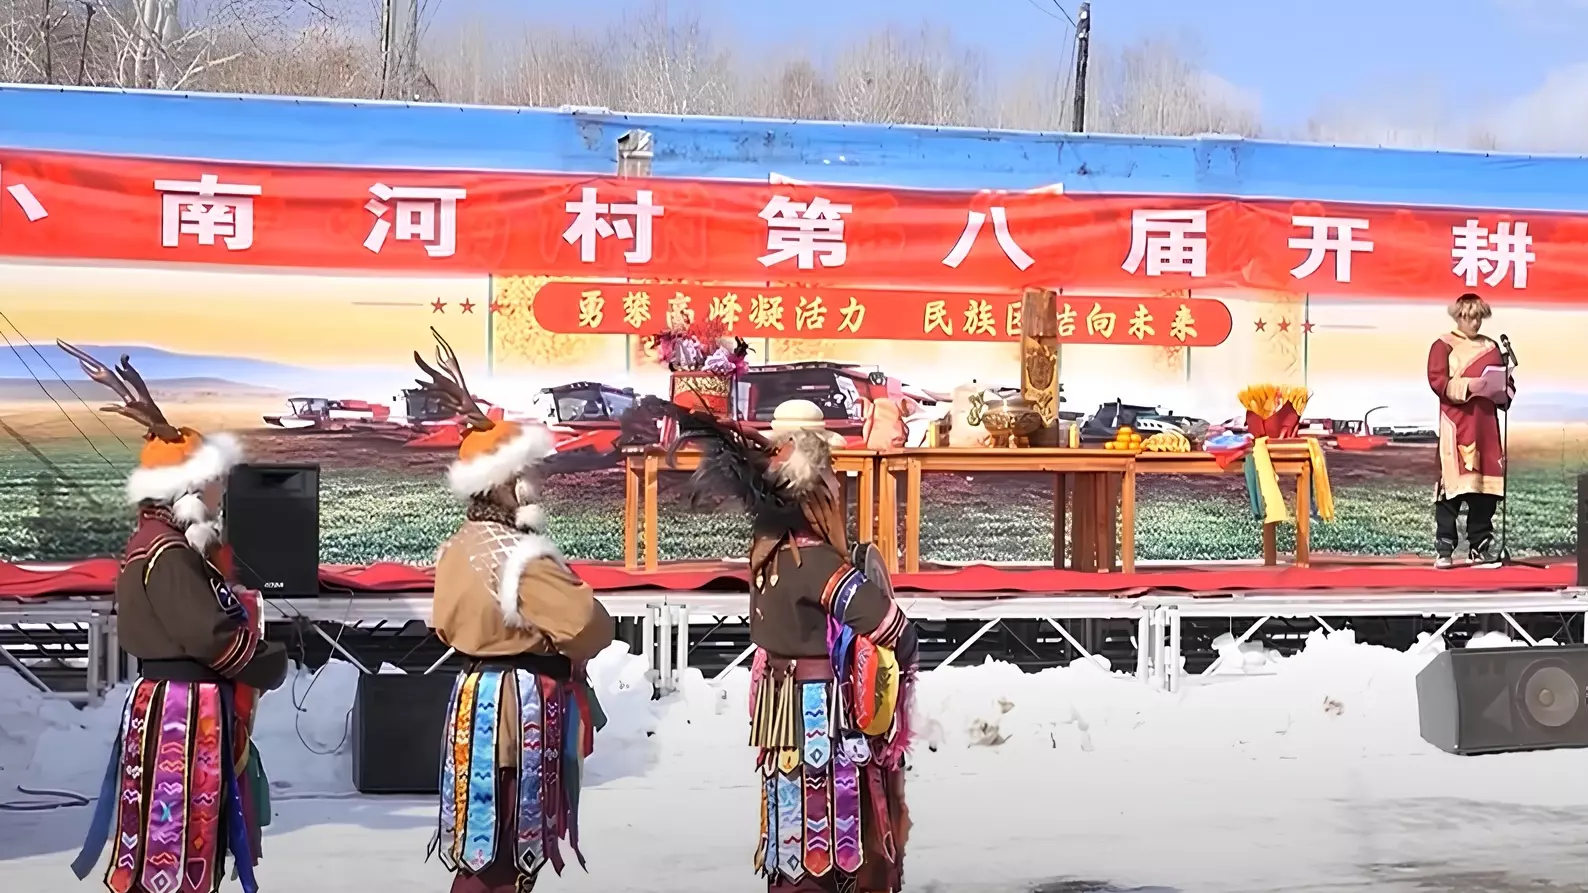 Шаманскими танцами отметили приход весны китайские соседи Хабаровска